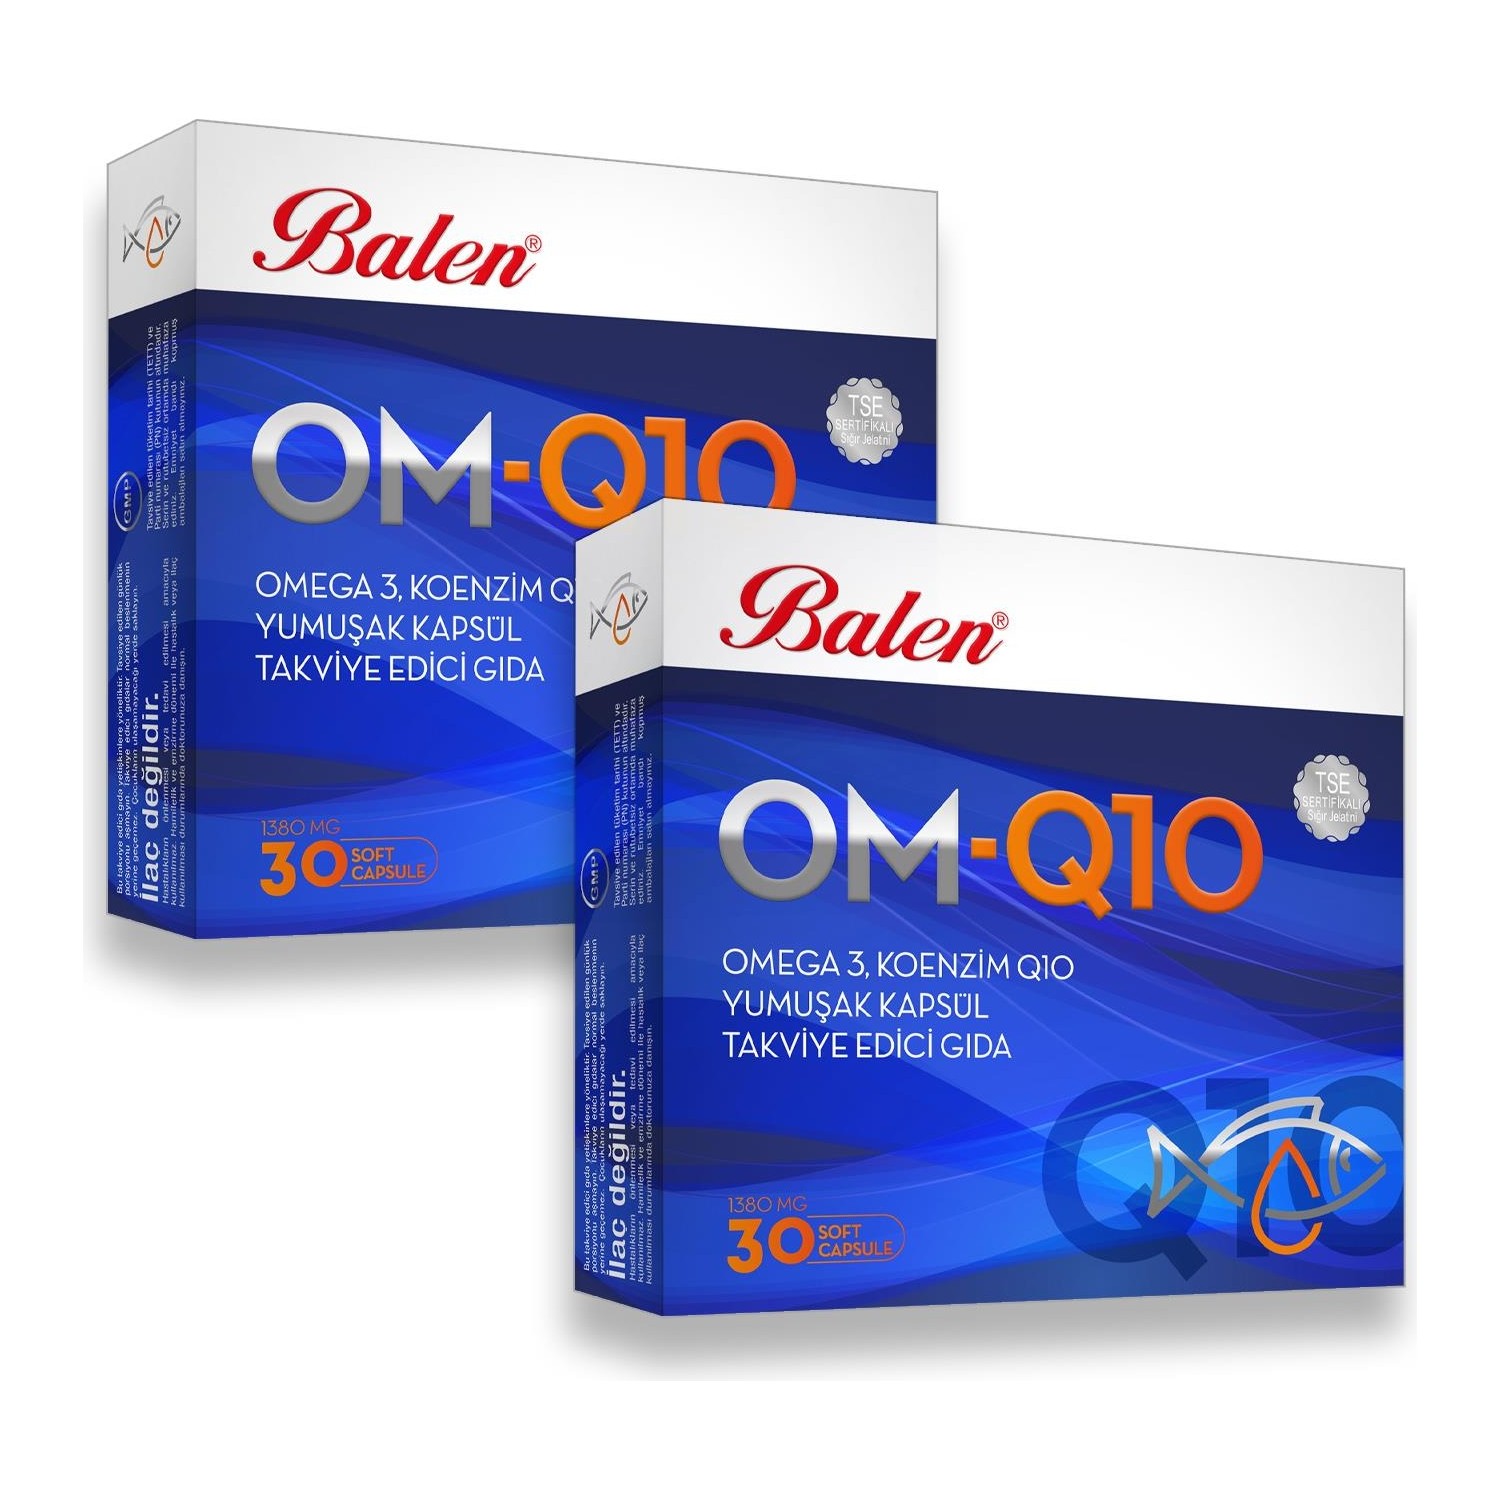 Рыбий жир Balen OM-Q10 Omega-3, 2 упаковки по 30 мягких капсул nordic naturals omega ldl омега 3 красный ферментированный рис и коэнзим q10 384 мг 60 капсул